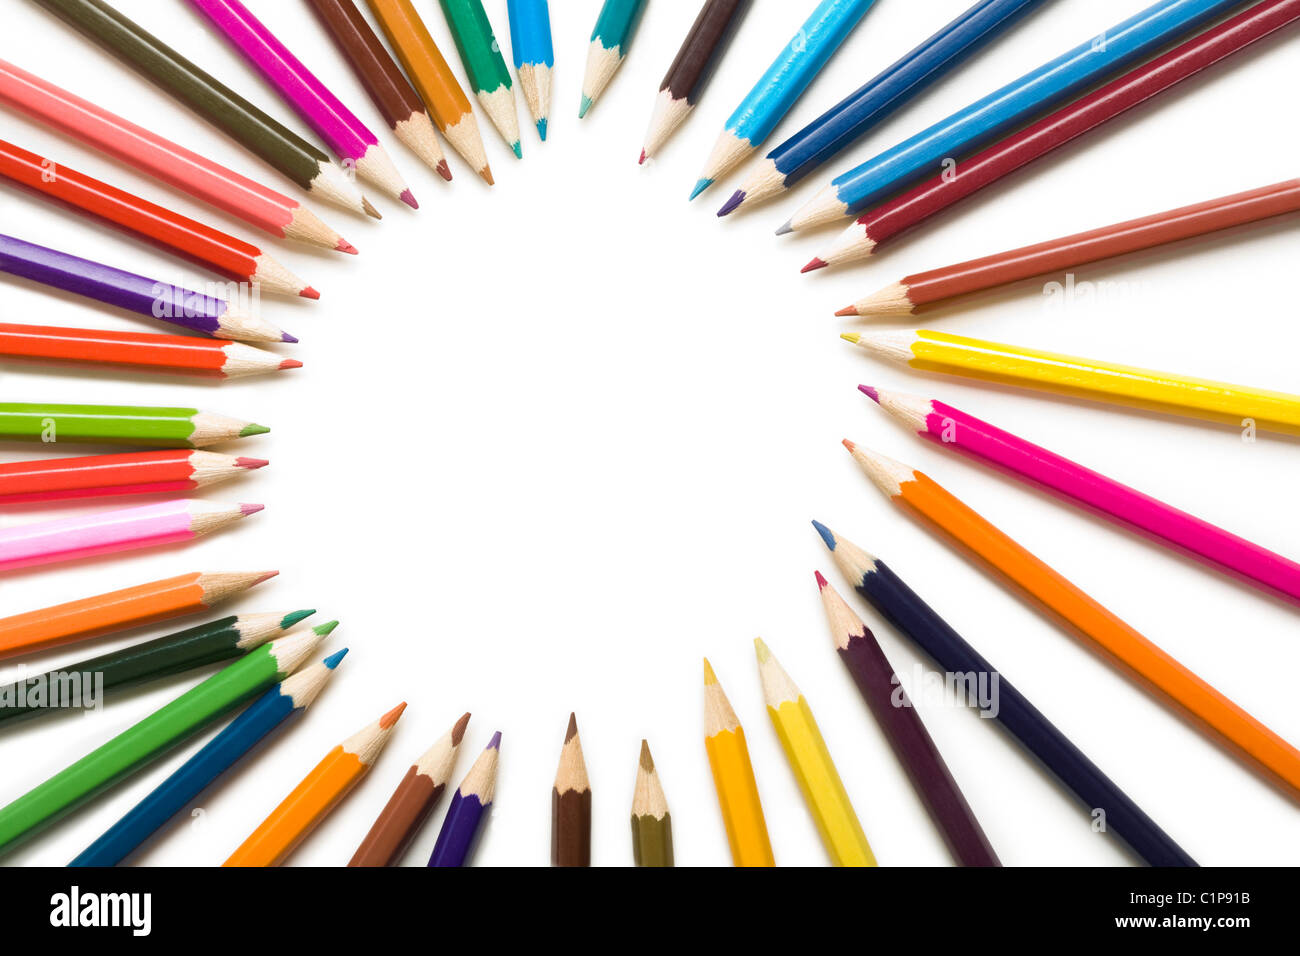 Close-up de crayons de couleur ronde formant sur fond blanc Banque D'Images